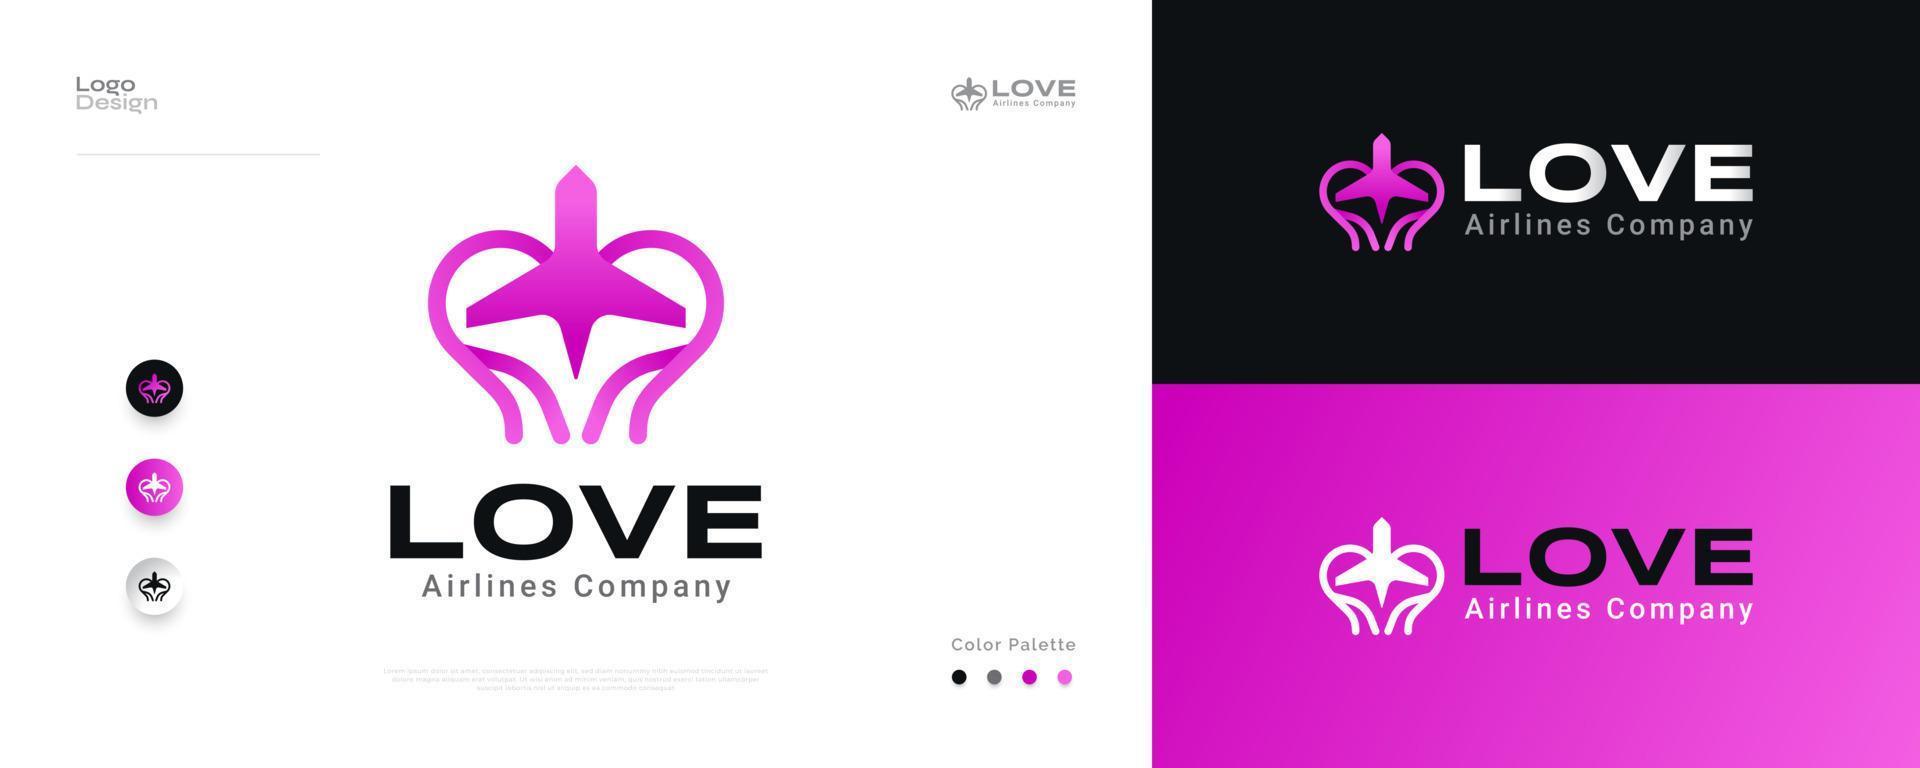 création de logo d'avion d'amour dans le concept de dégradé rose. logo ou icône d'avion de coeur, approprié au logo d'affaires d'aviation, de compagnies aériennes, de tourisme ou de voyage vecteur